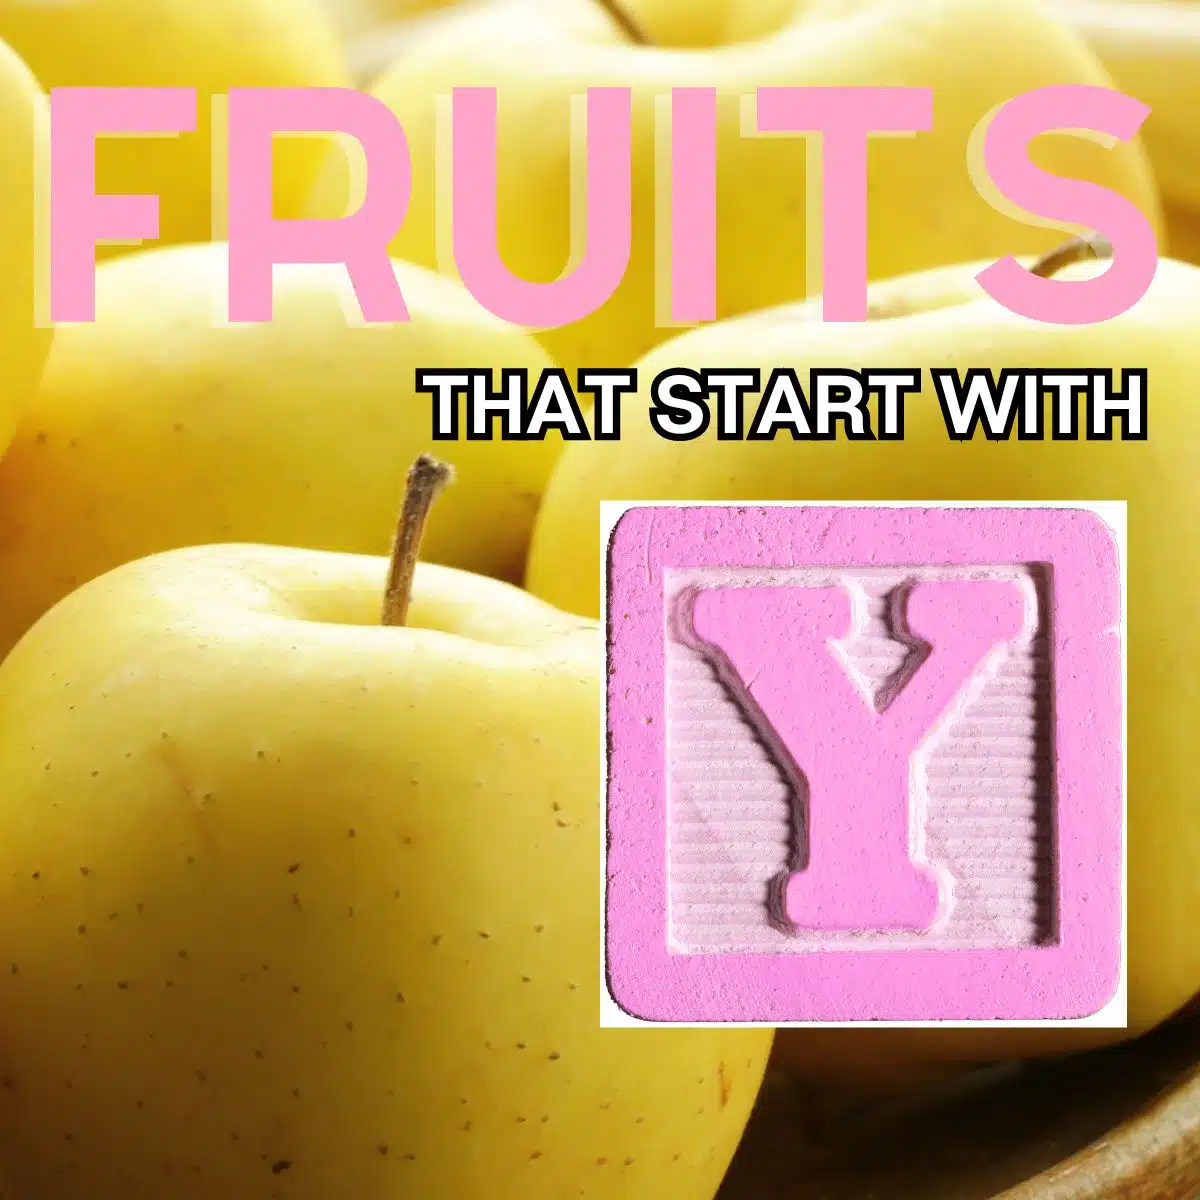 Firkantet billede for frugter, der starter med bogstavet y, med gult æble.